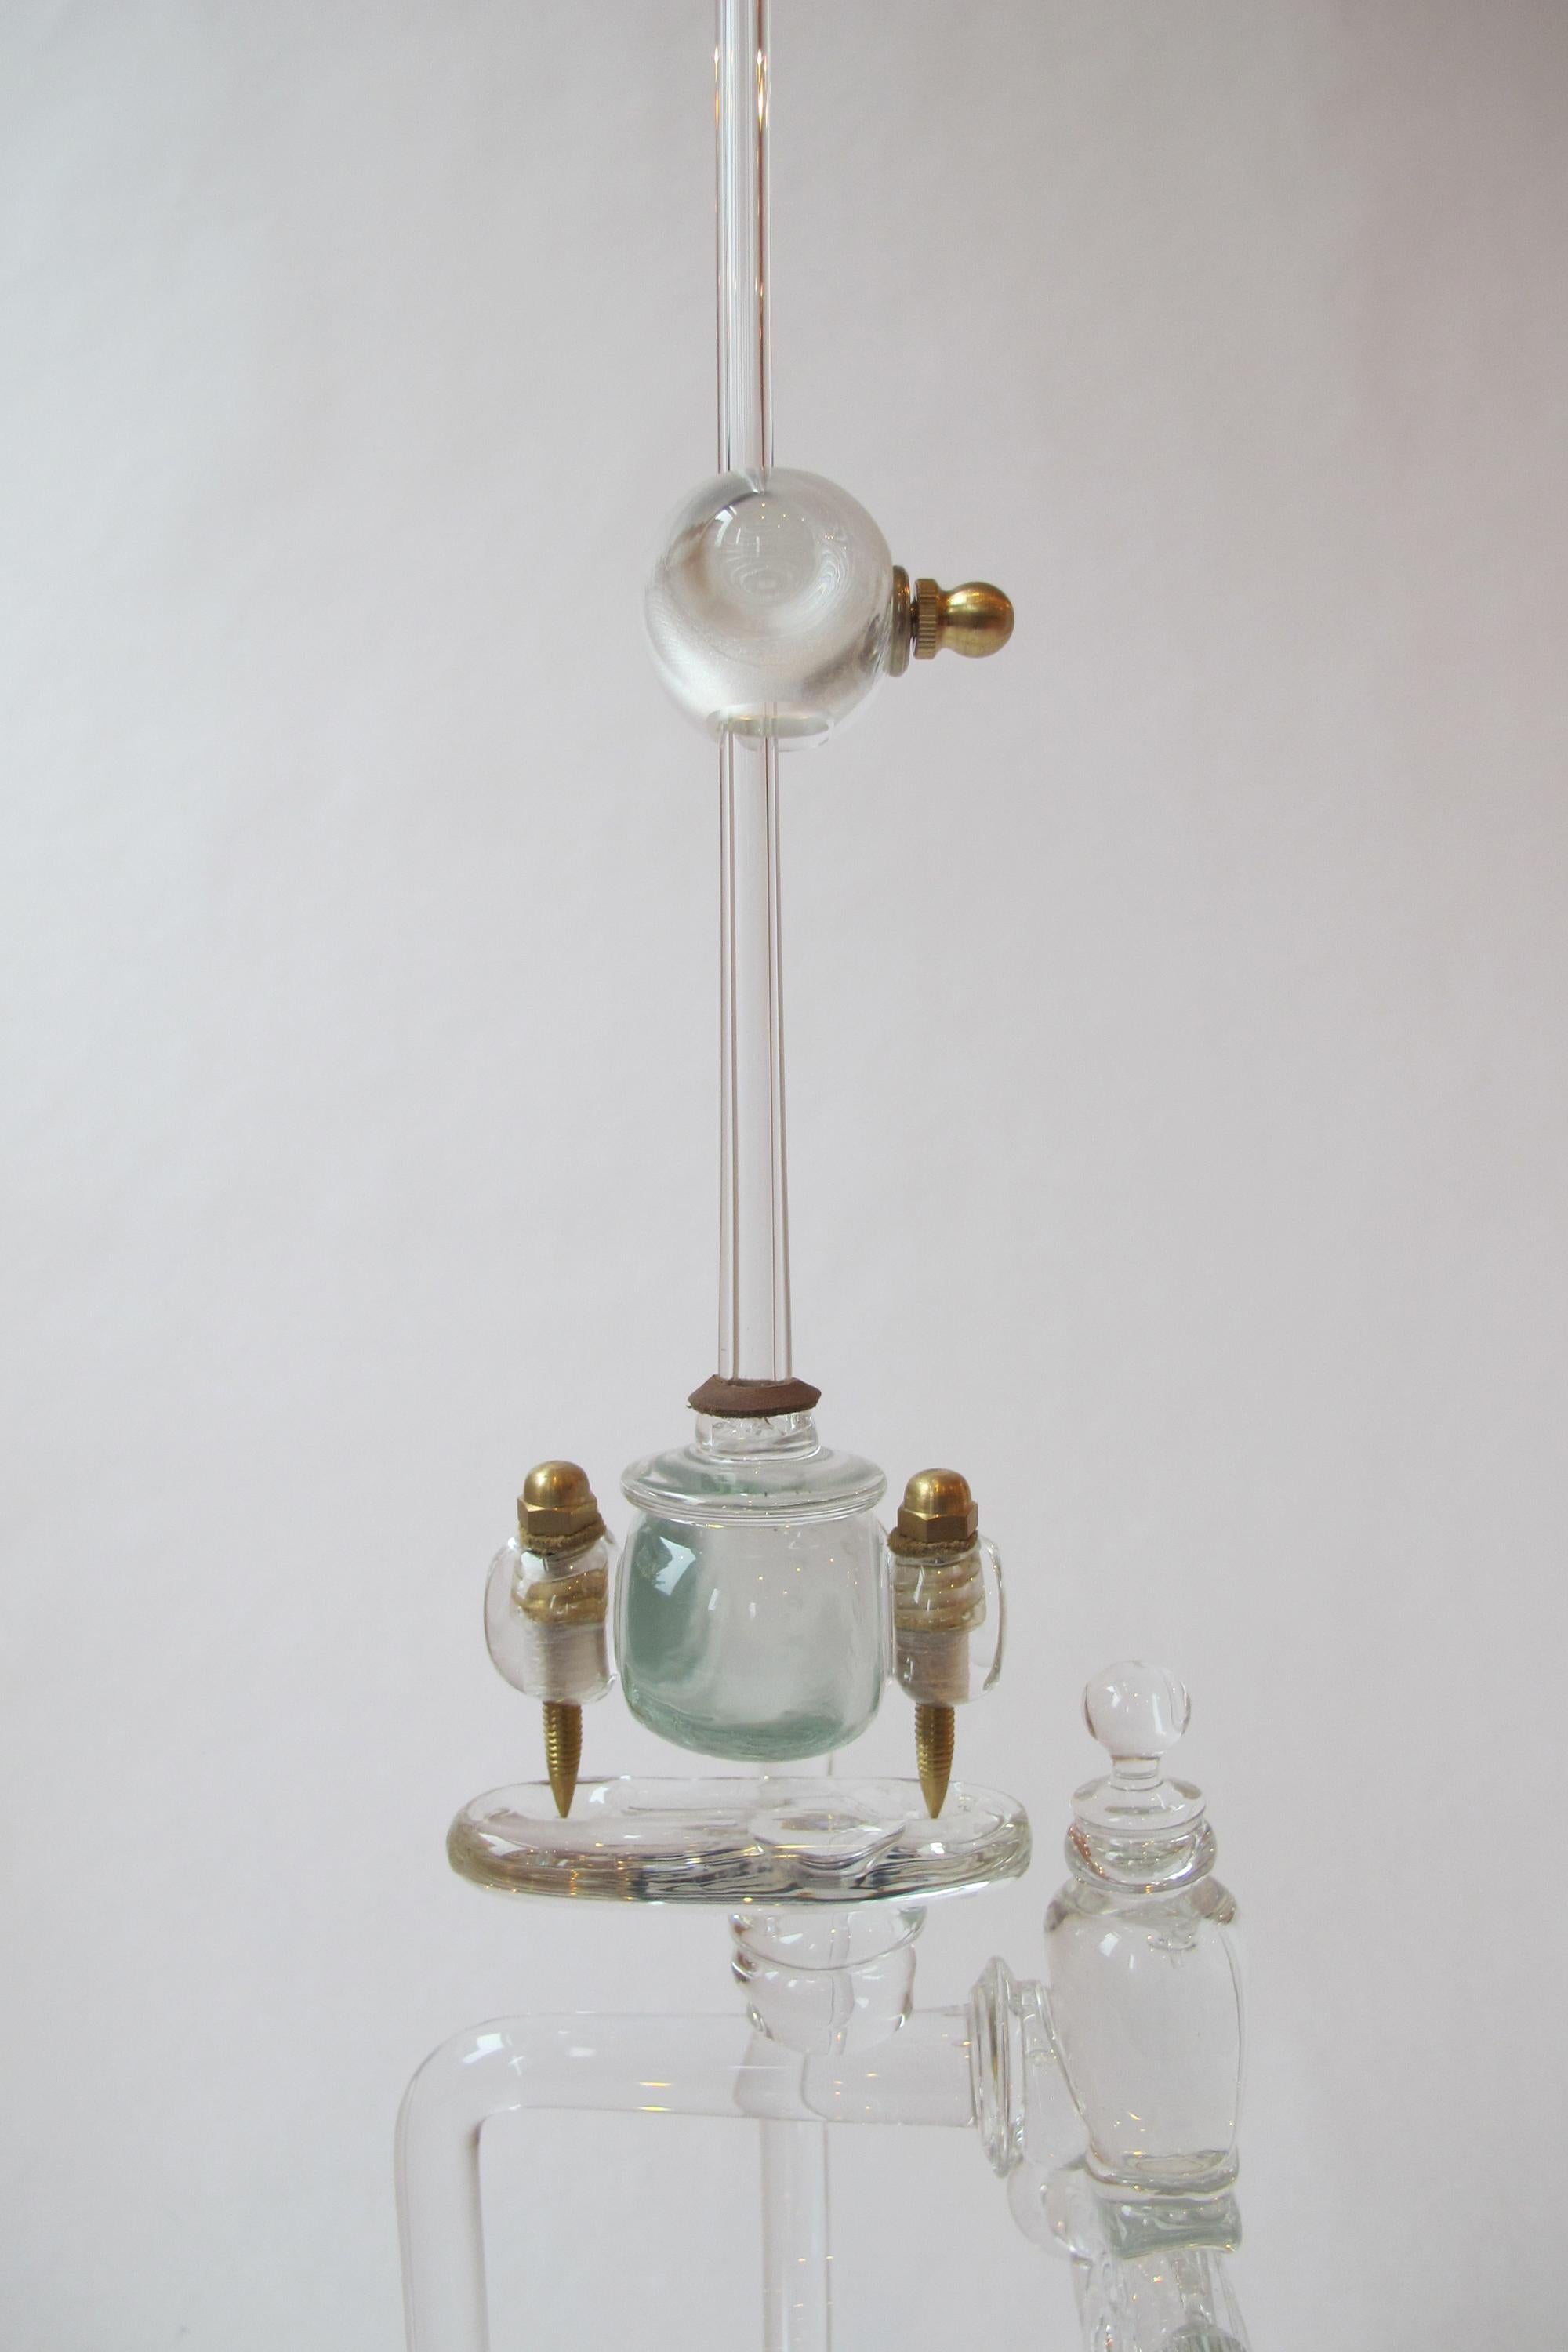 glass metronome